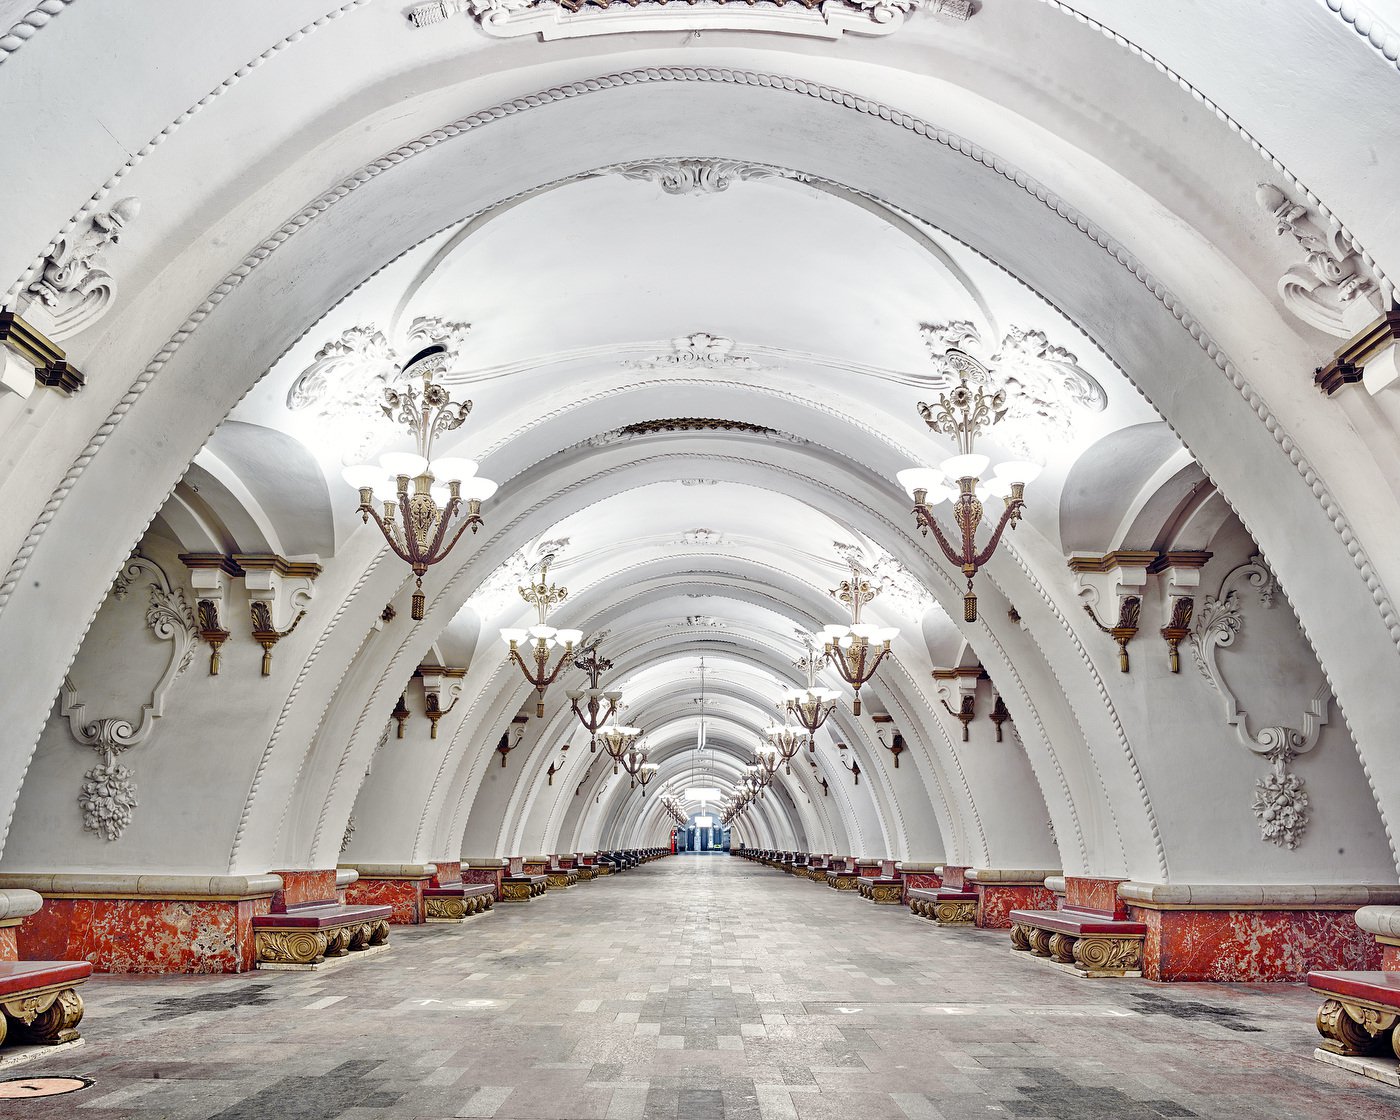 Станции метро в москве фото с названиями